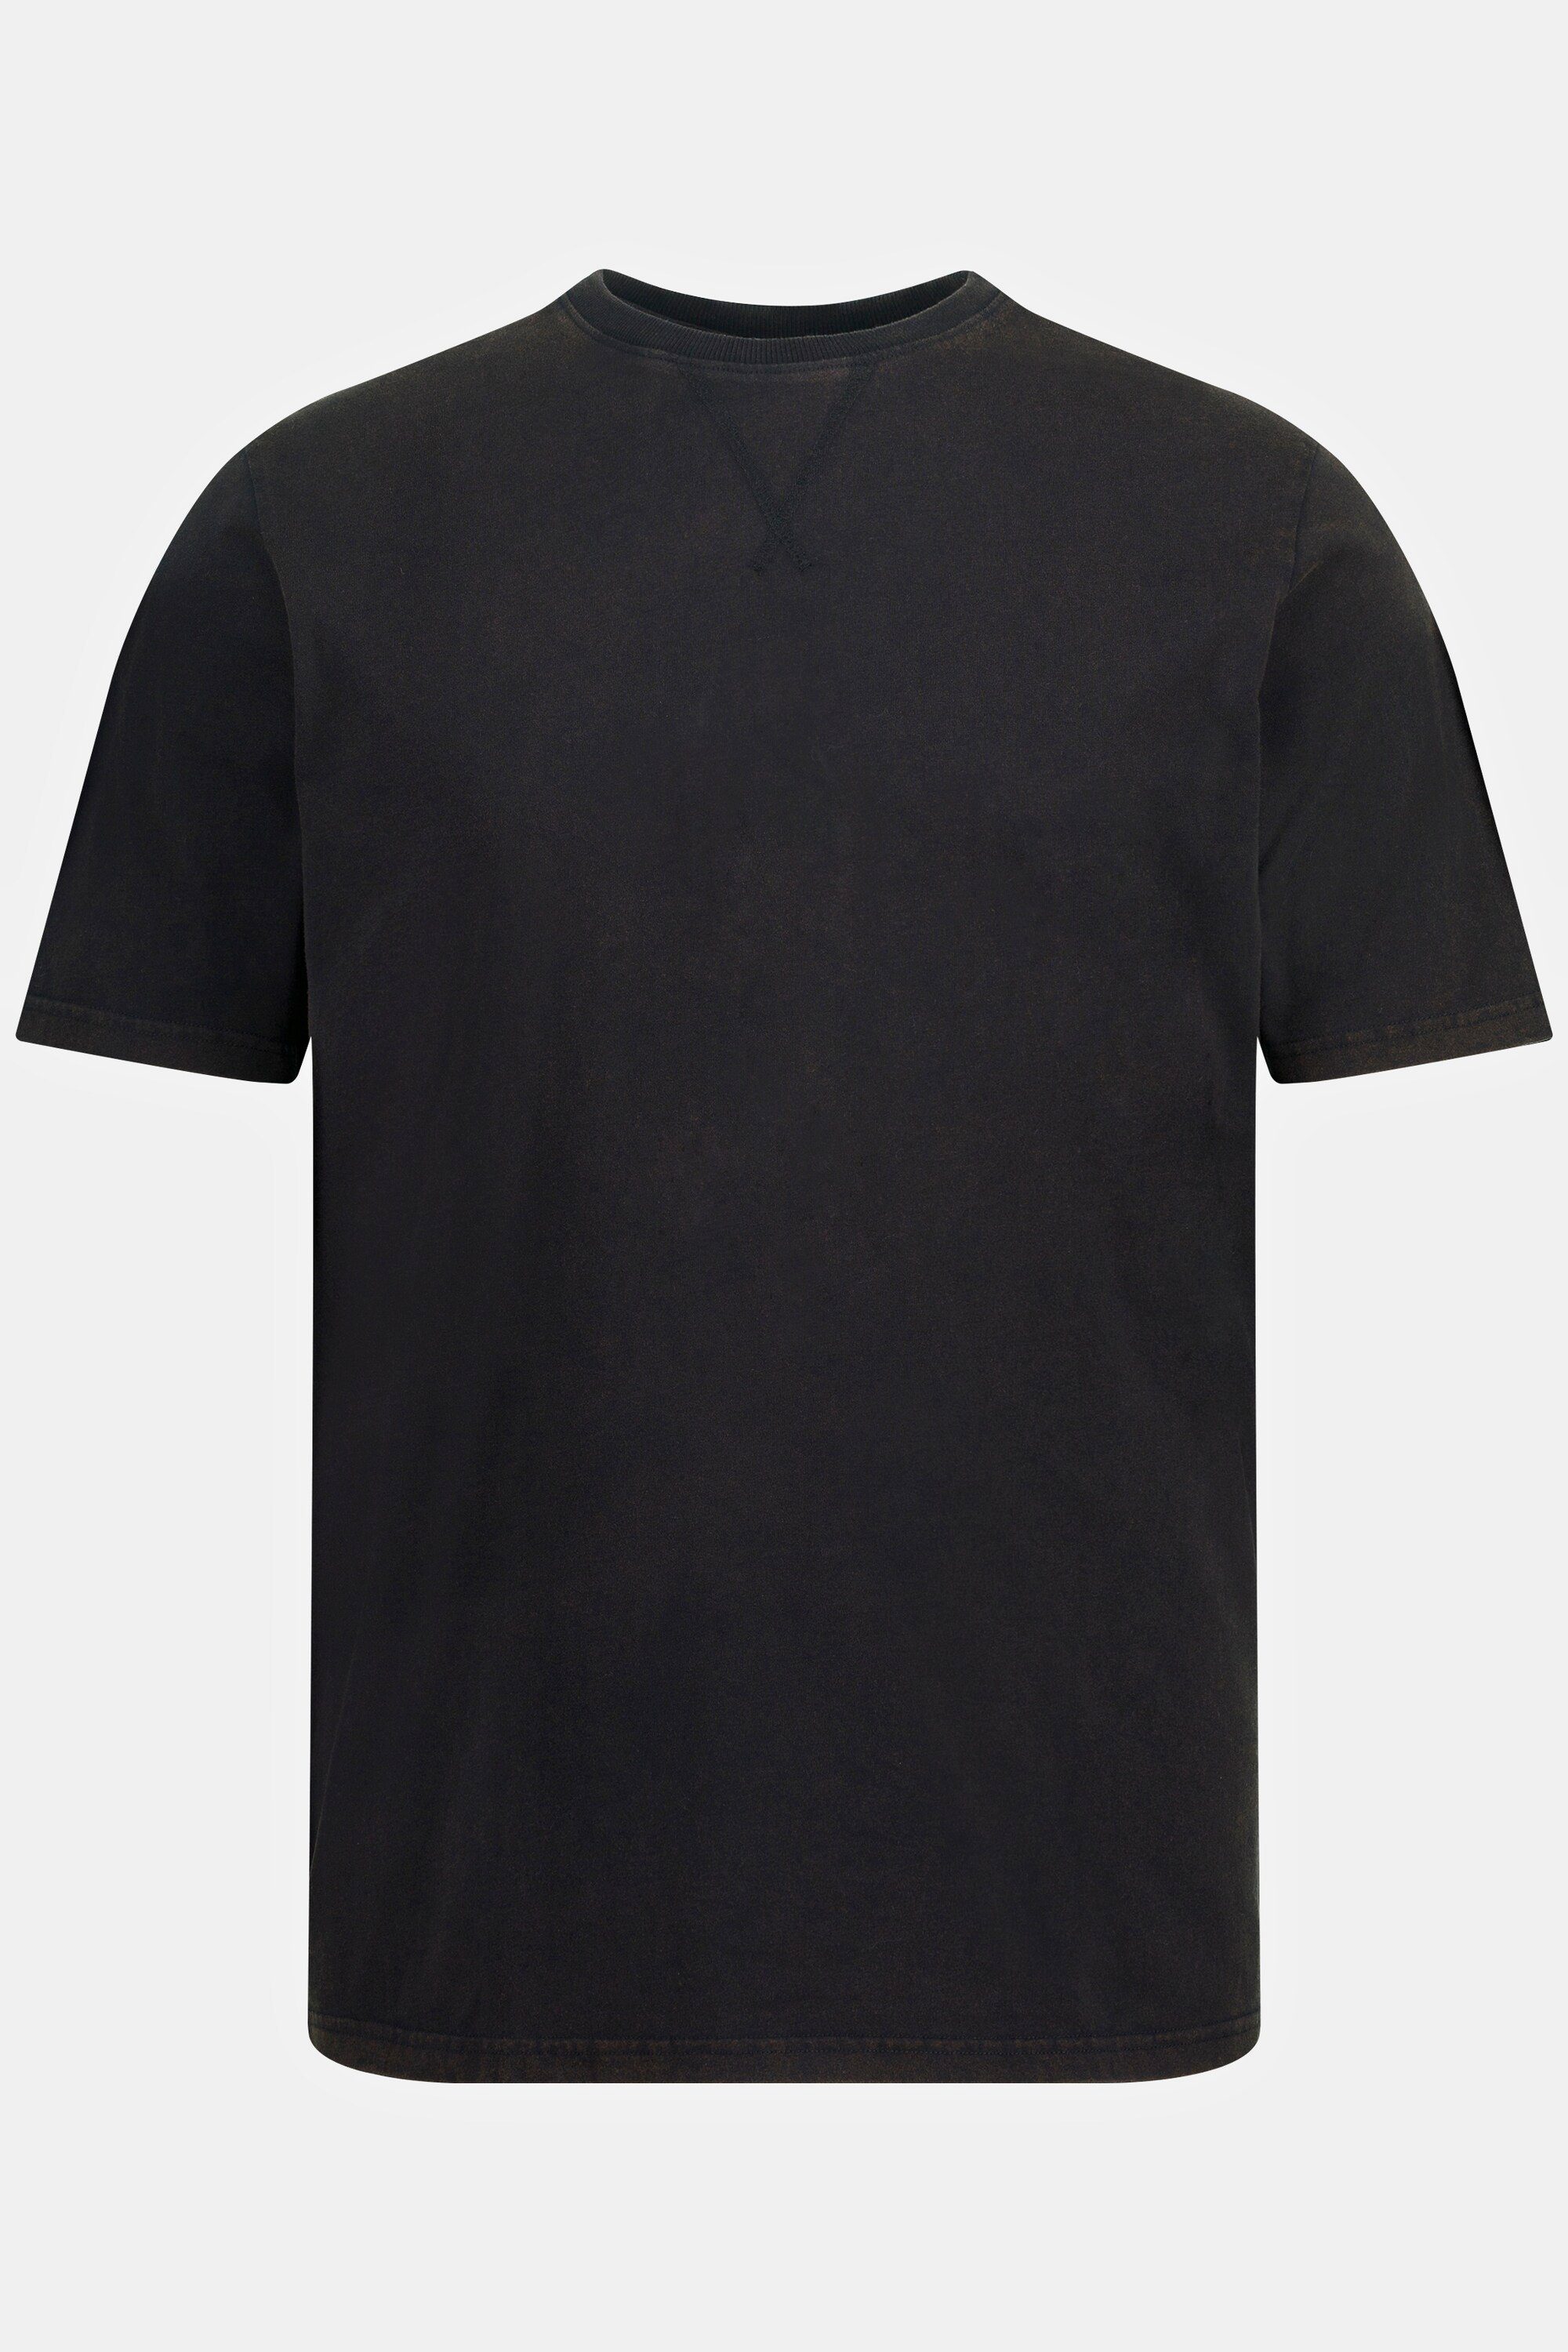 JP1880 T-Shirt Halbarm T-Shirt Rundhals acid washed schwarz